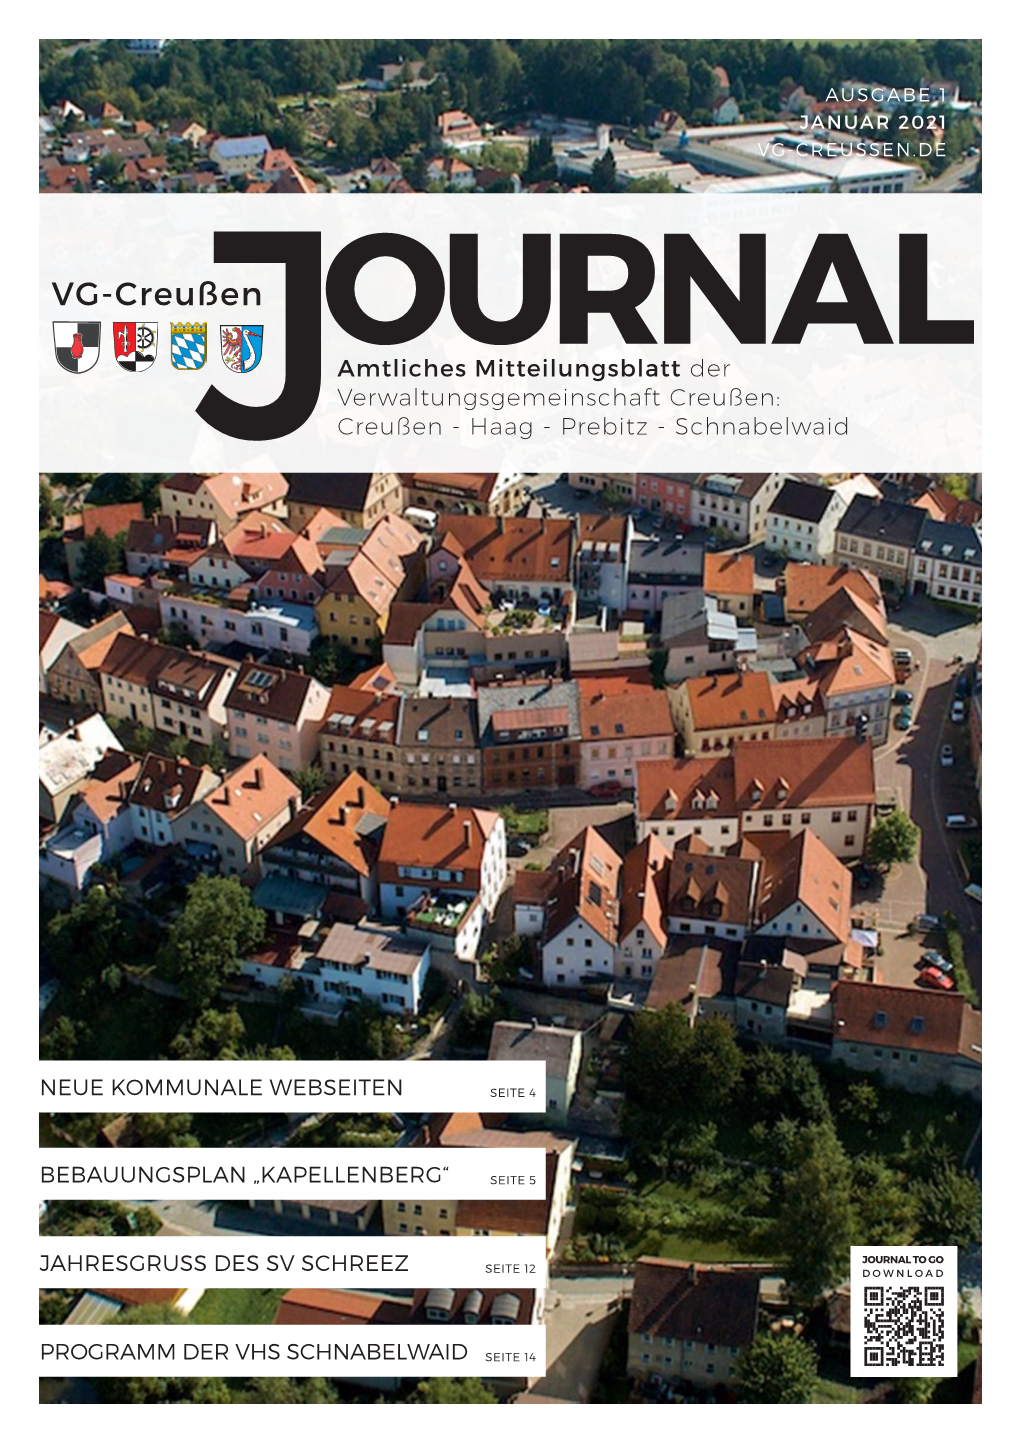 Journal to Go Jahresgruss Des Sv Schreez Seite 12 Download